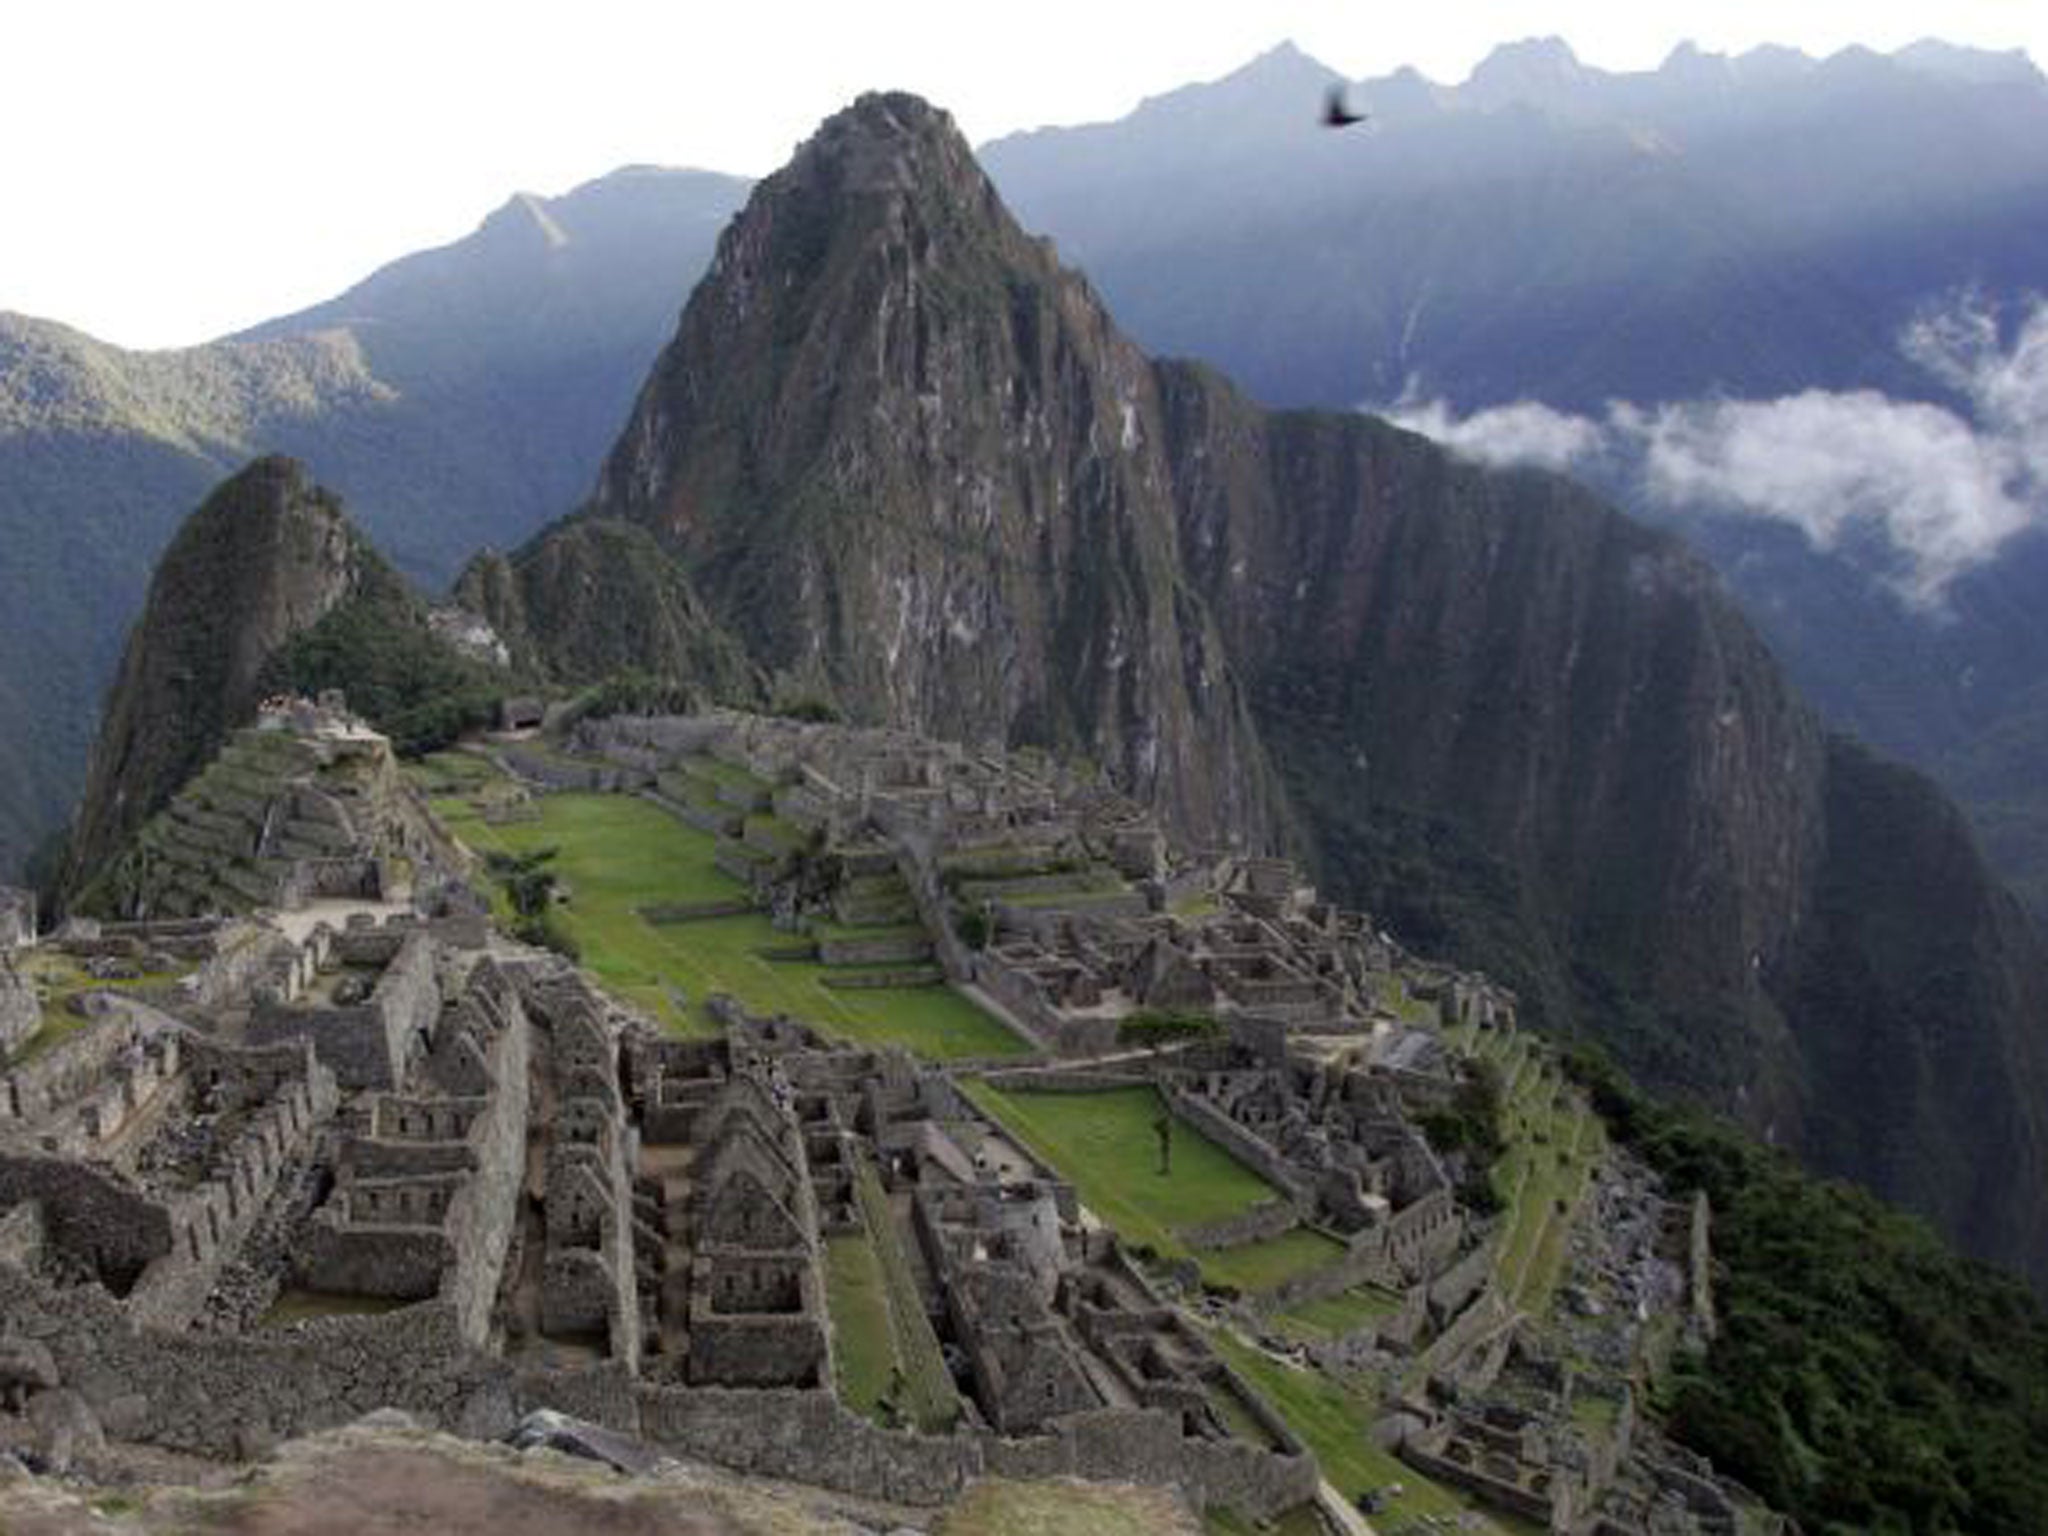 Inca encounter: jet off to Peru this spring